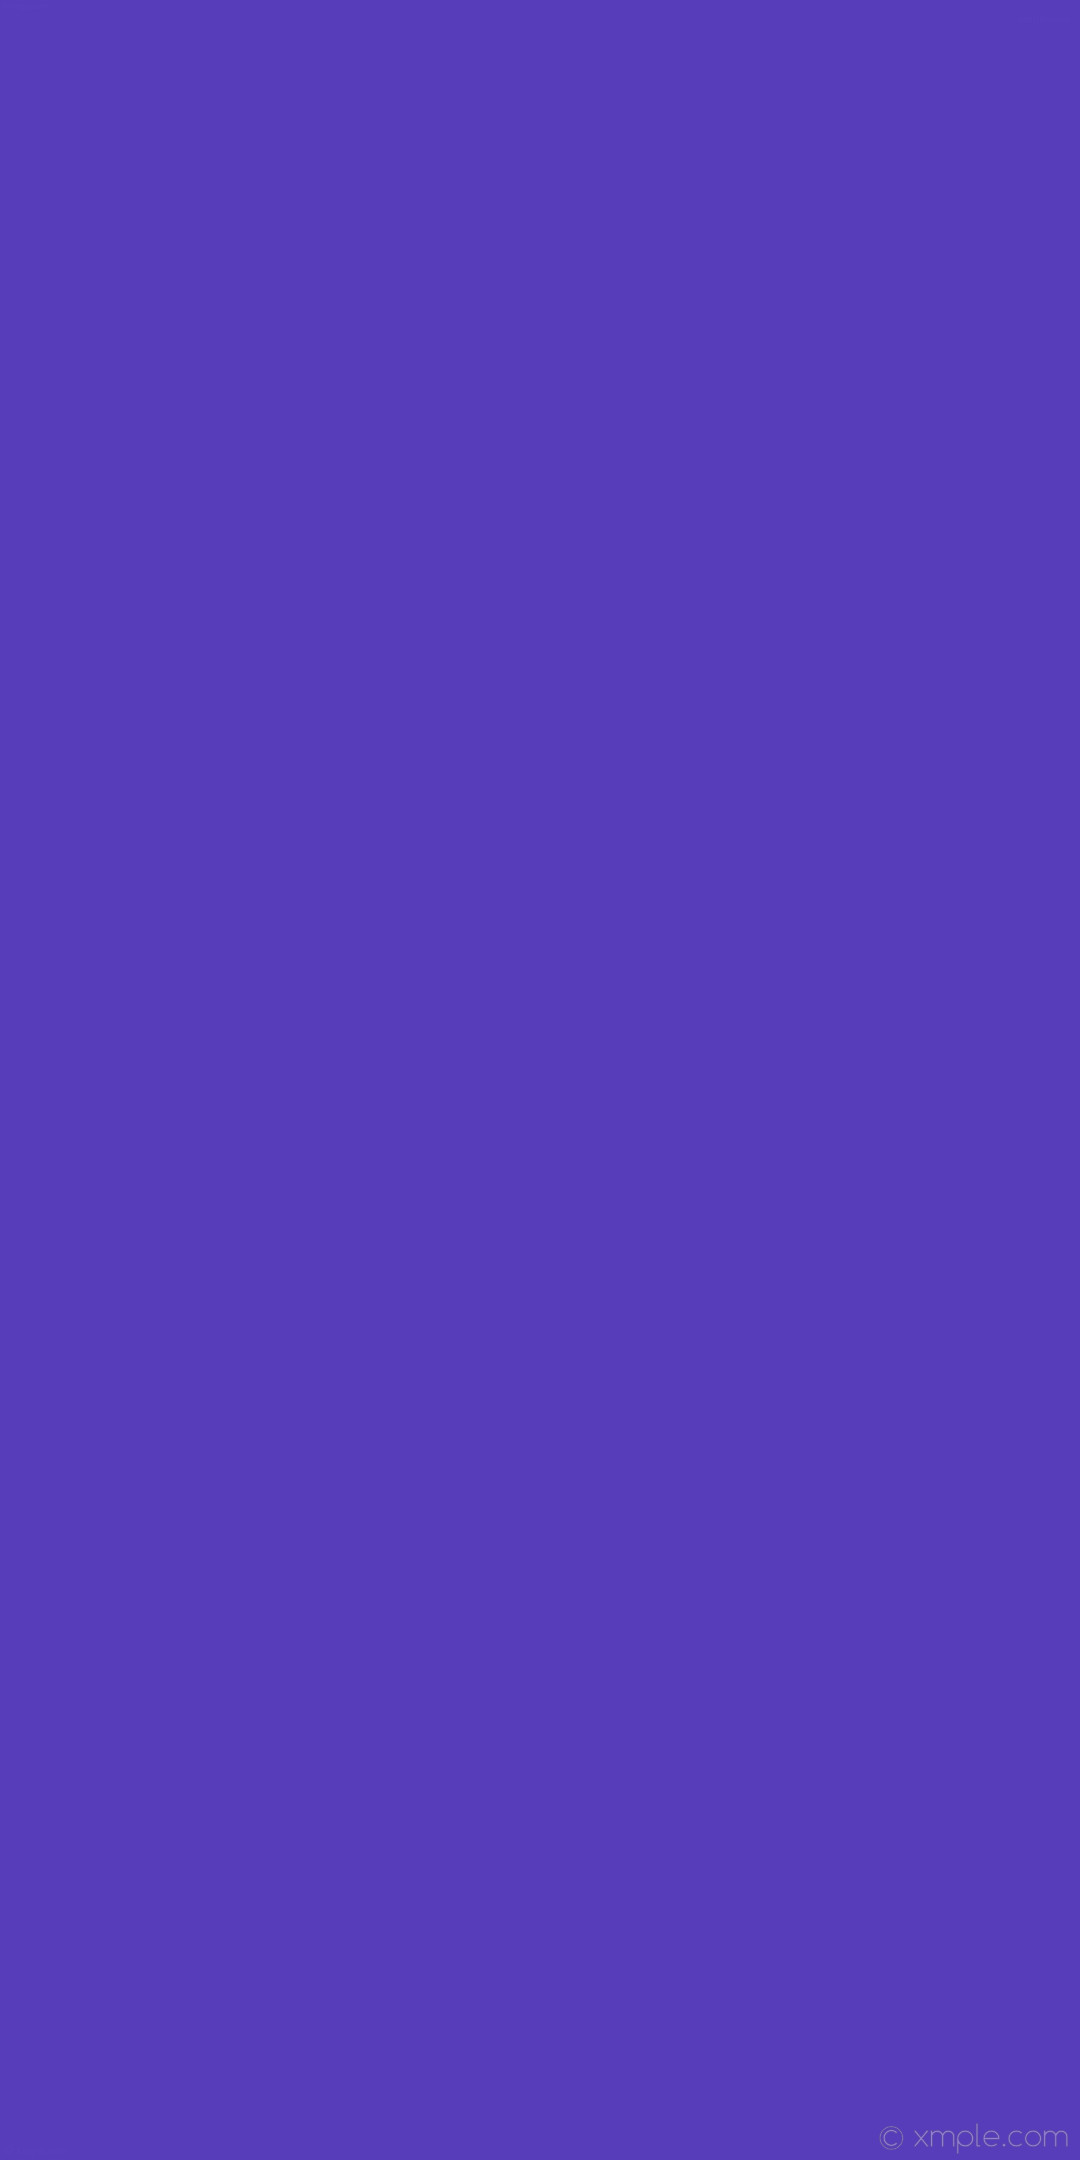 1080x2160 wallpaper plain solid color blue single one colour #583dba